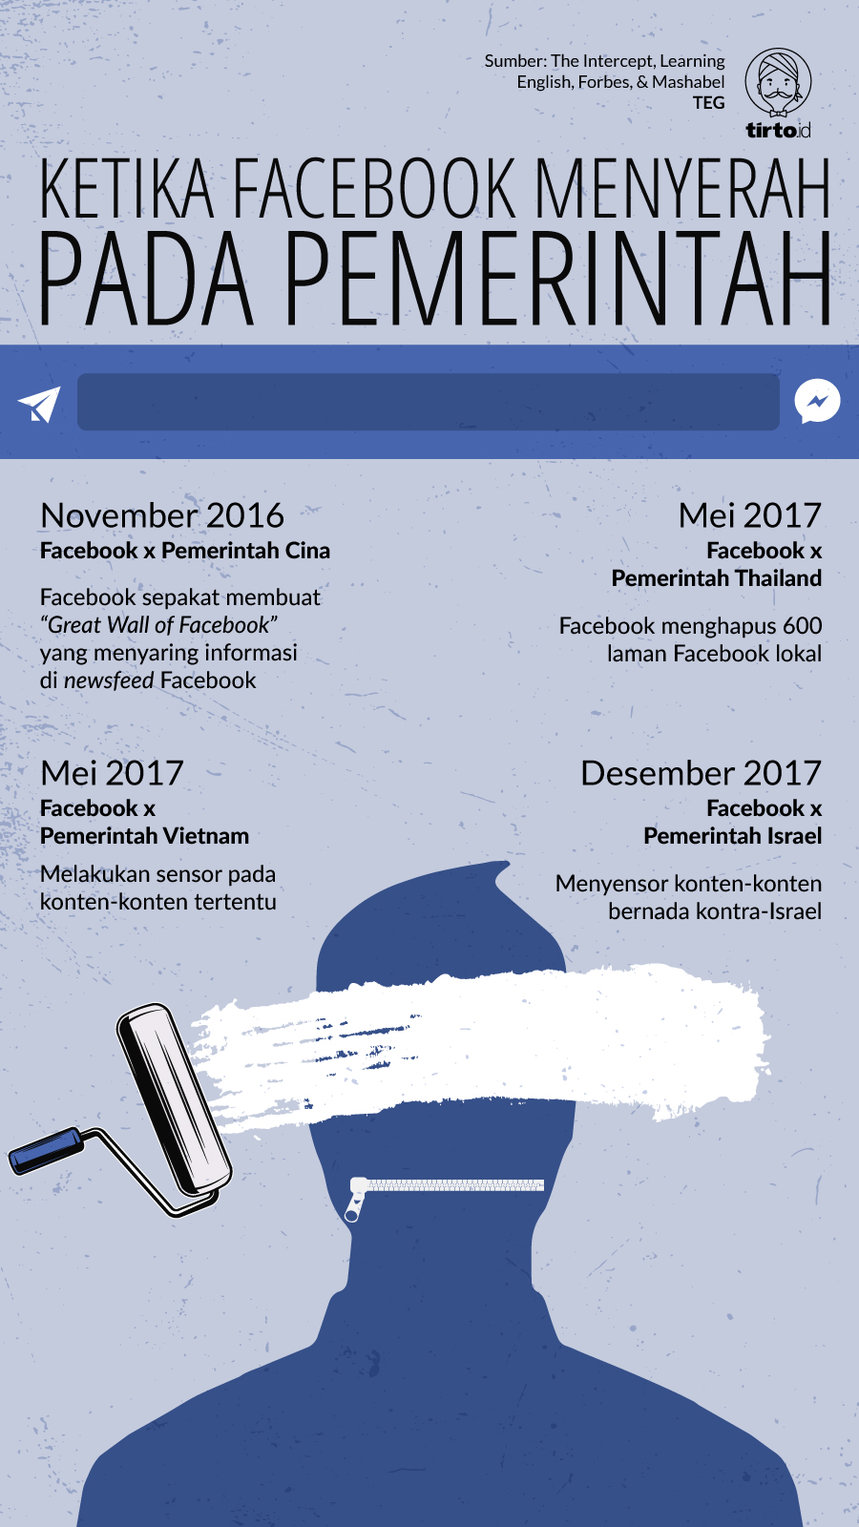 Infografik Facebook Menyerah Pada Pemerintah